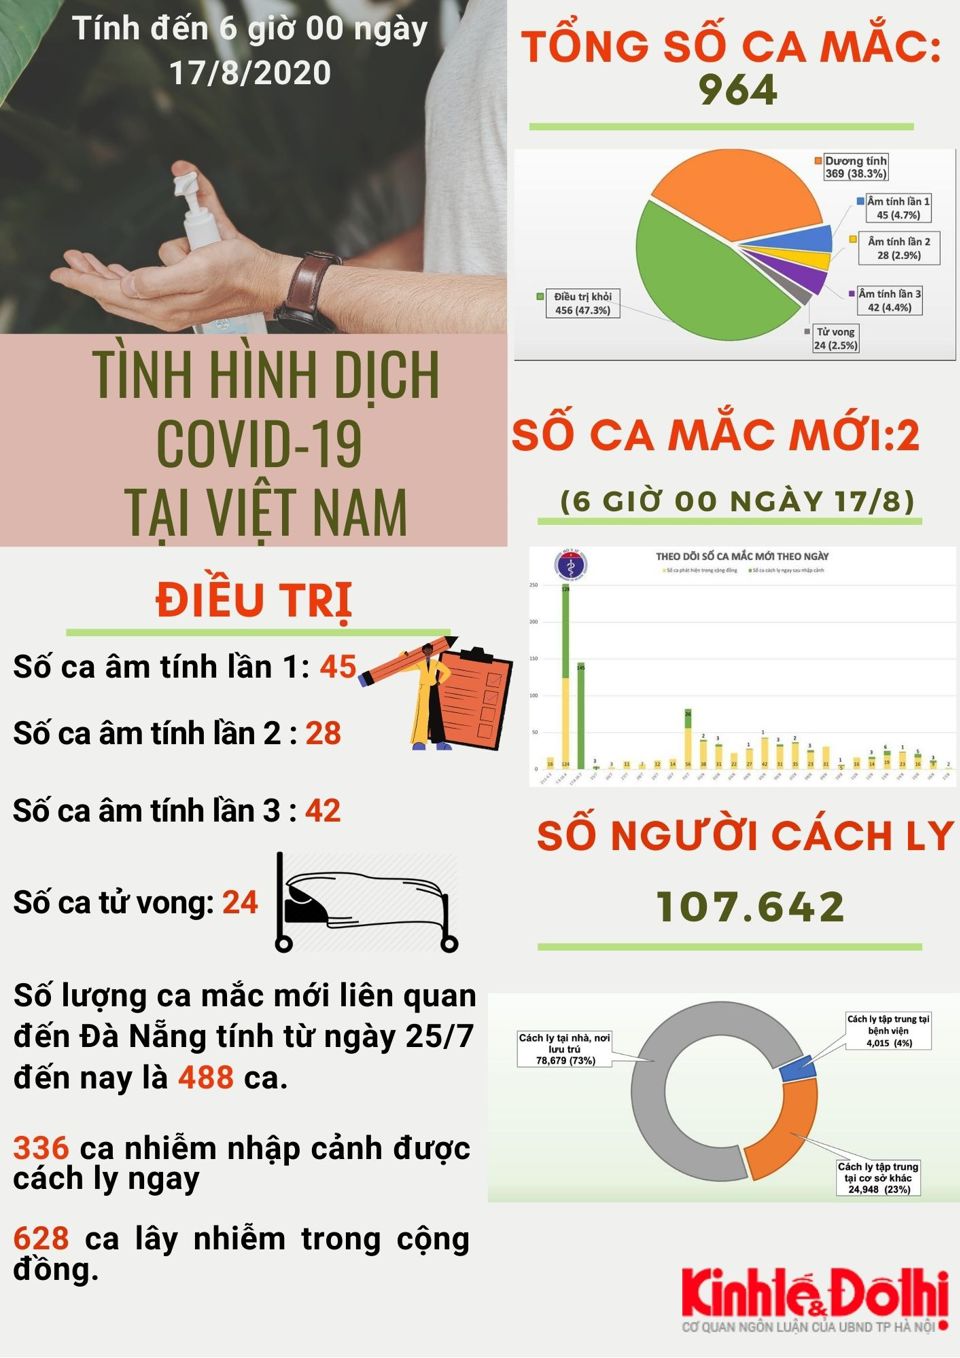 [Infographic] Việt Nam ghi nhận 628 ca lây nhiễm Covid-19 trong cộng đồng - Ảnh 1